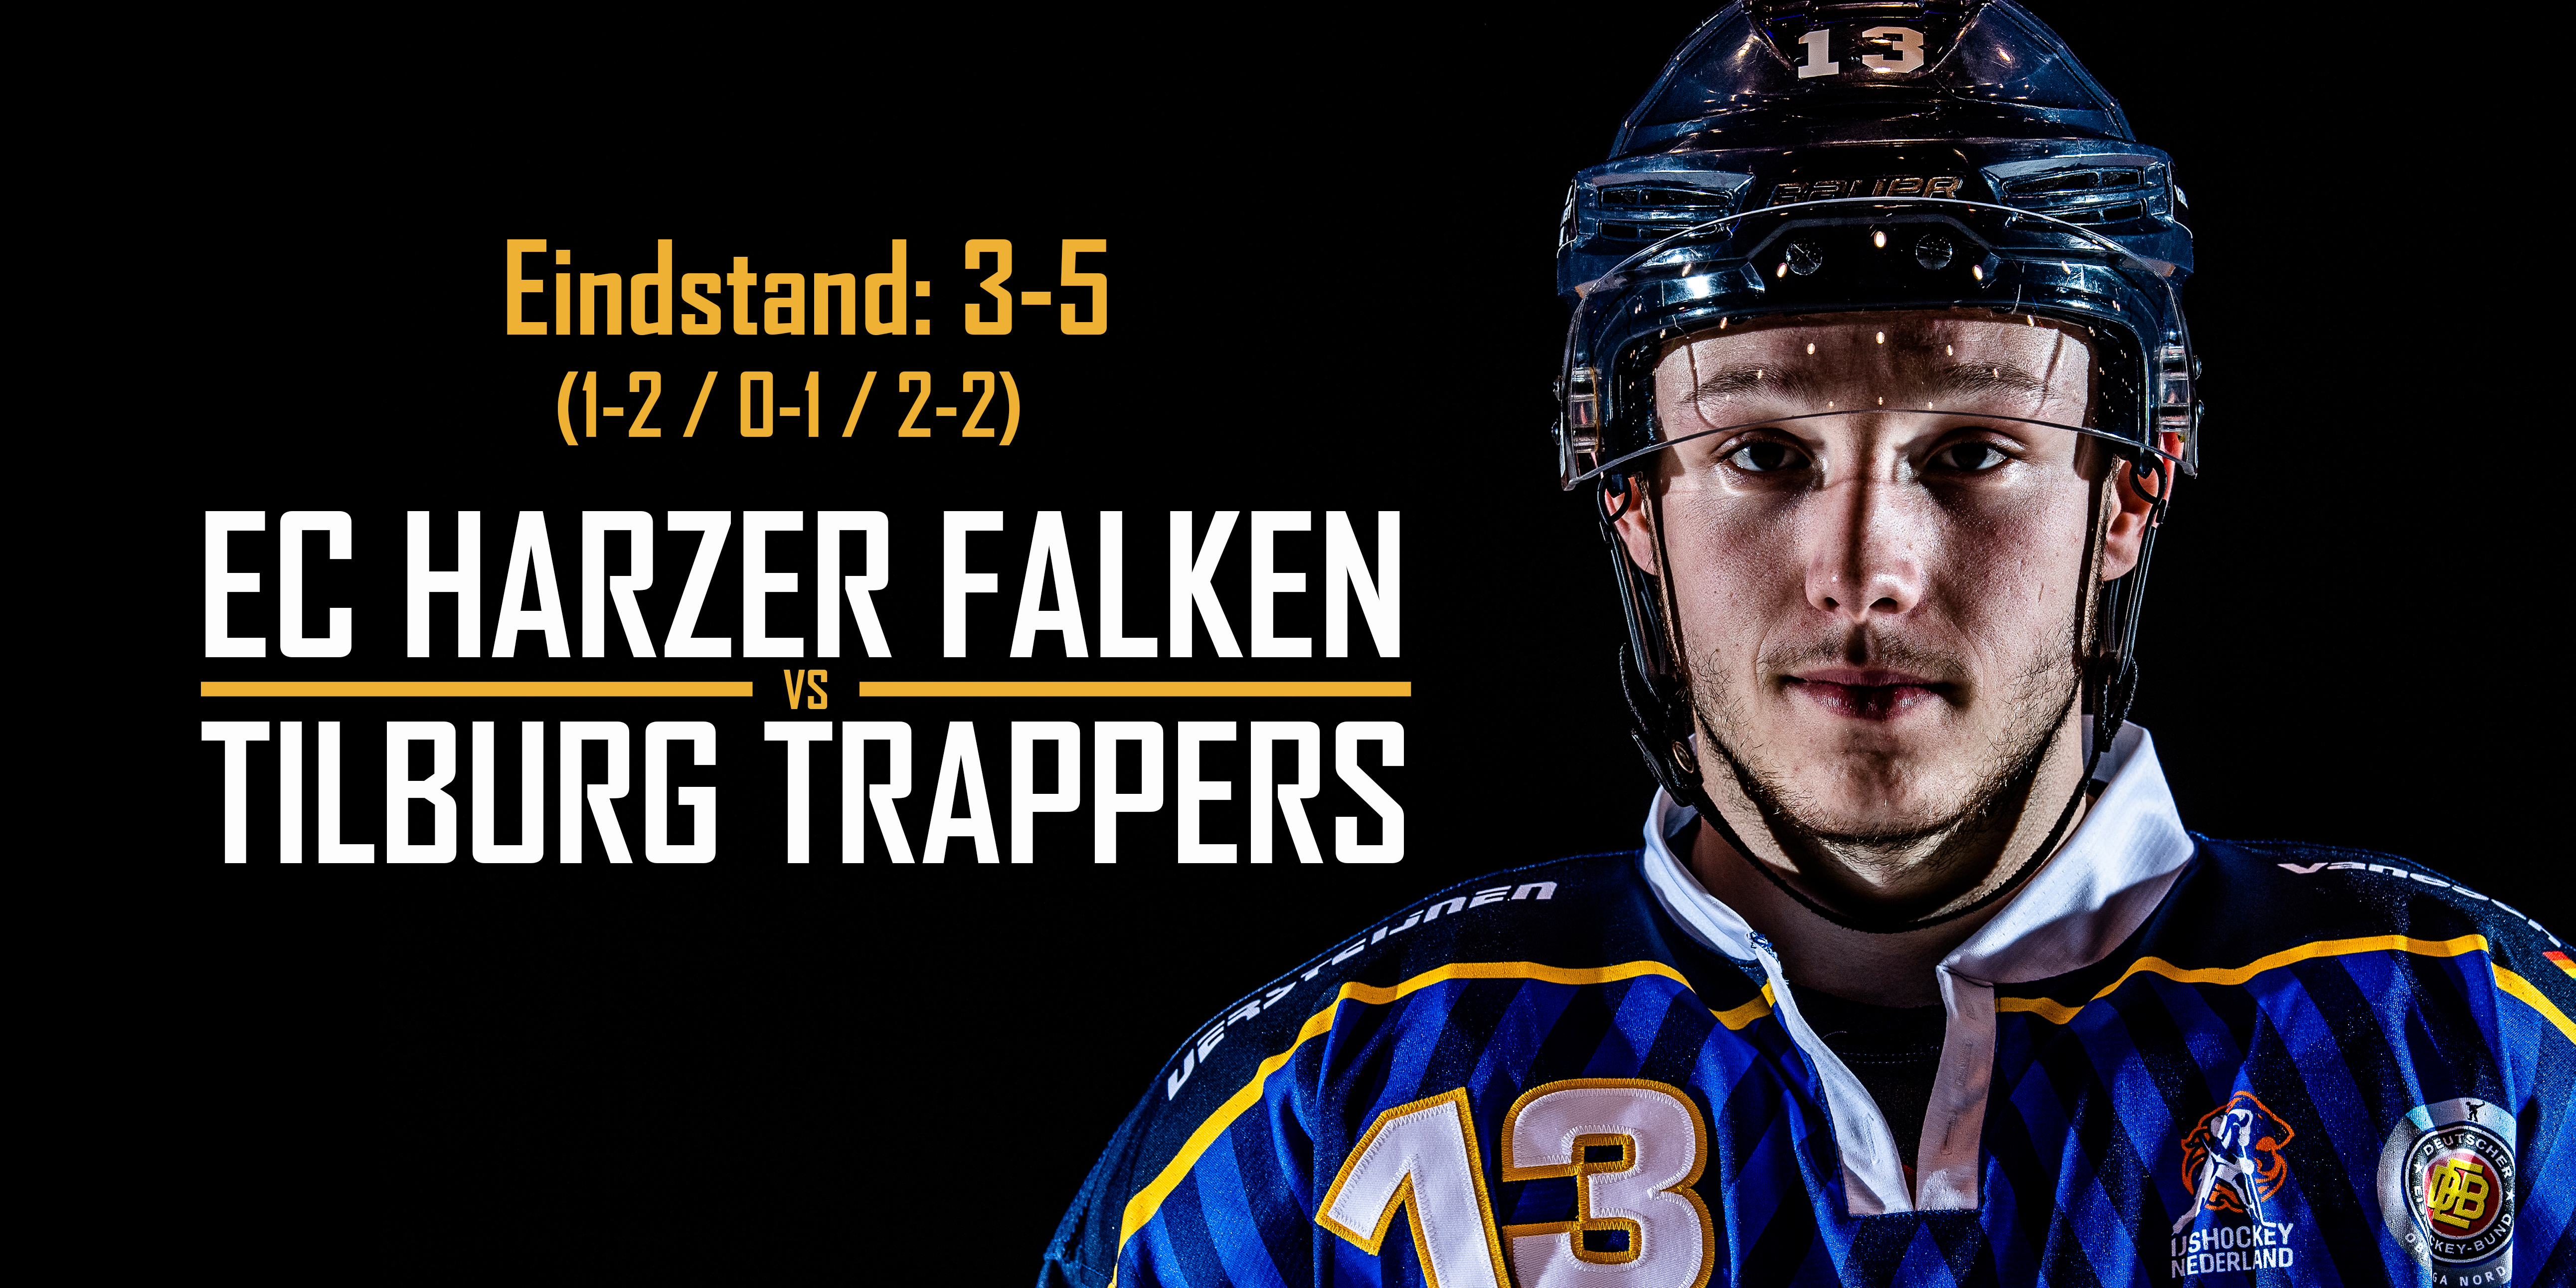 EC Harzer Falken vs. Tilburg Trappers (3-5)